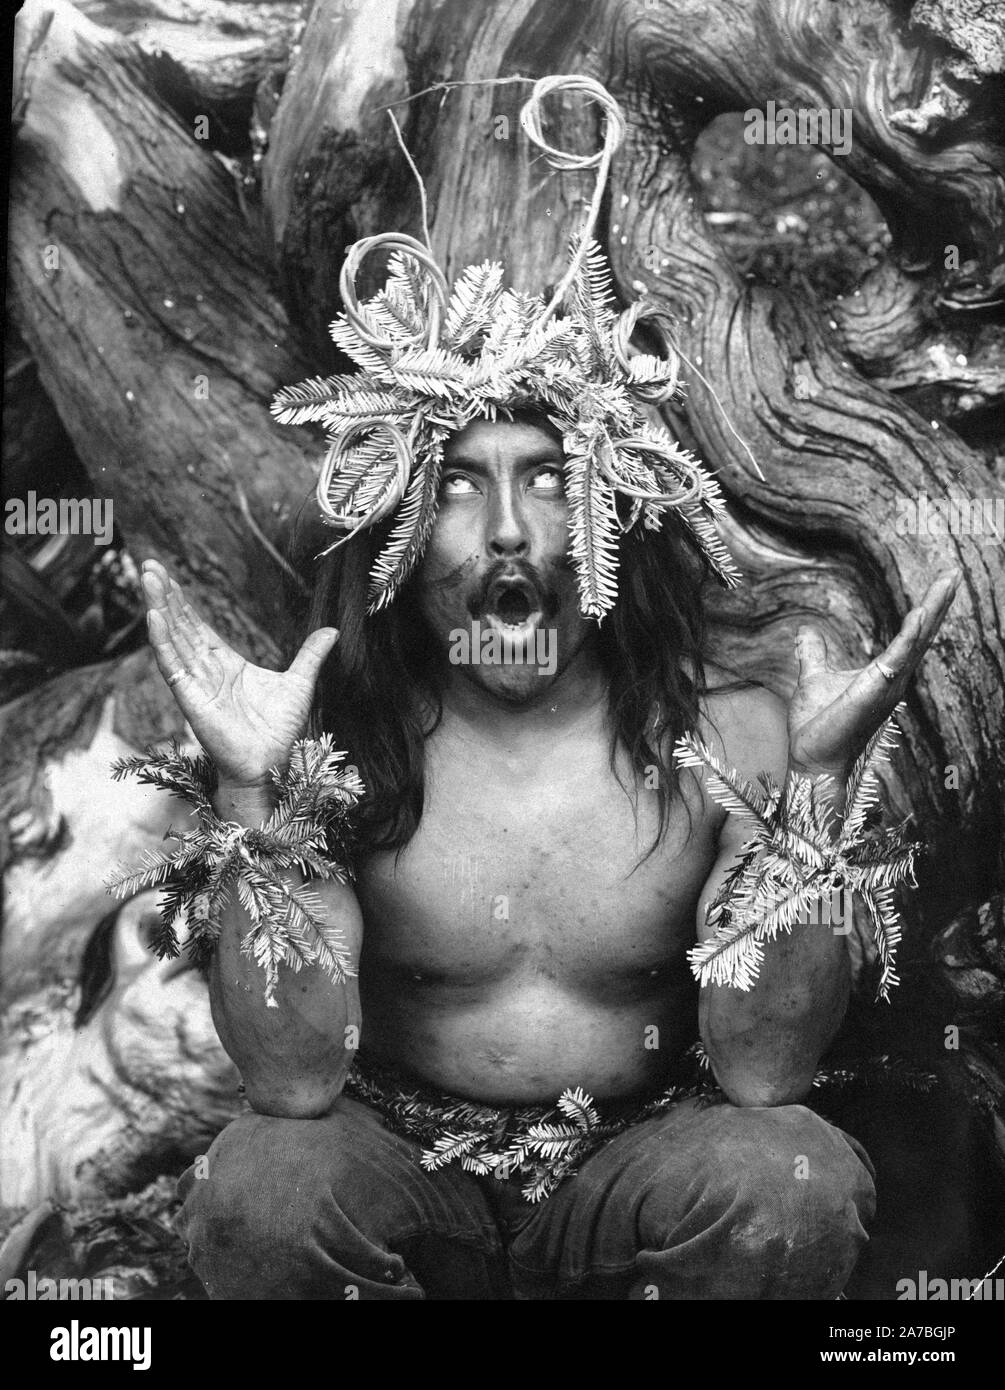 Edward S. Curits les Indiens - Hamatsa shaman possédé par un pouvoir surnaturel après avoir passé plusieurs jours dans les bois dans le cadre d'un rituel d'initiation ca. 1914 Banque D'Images